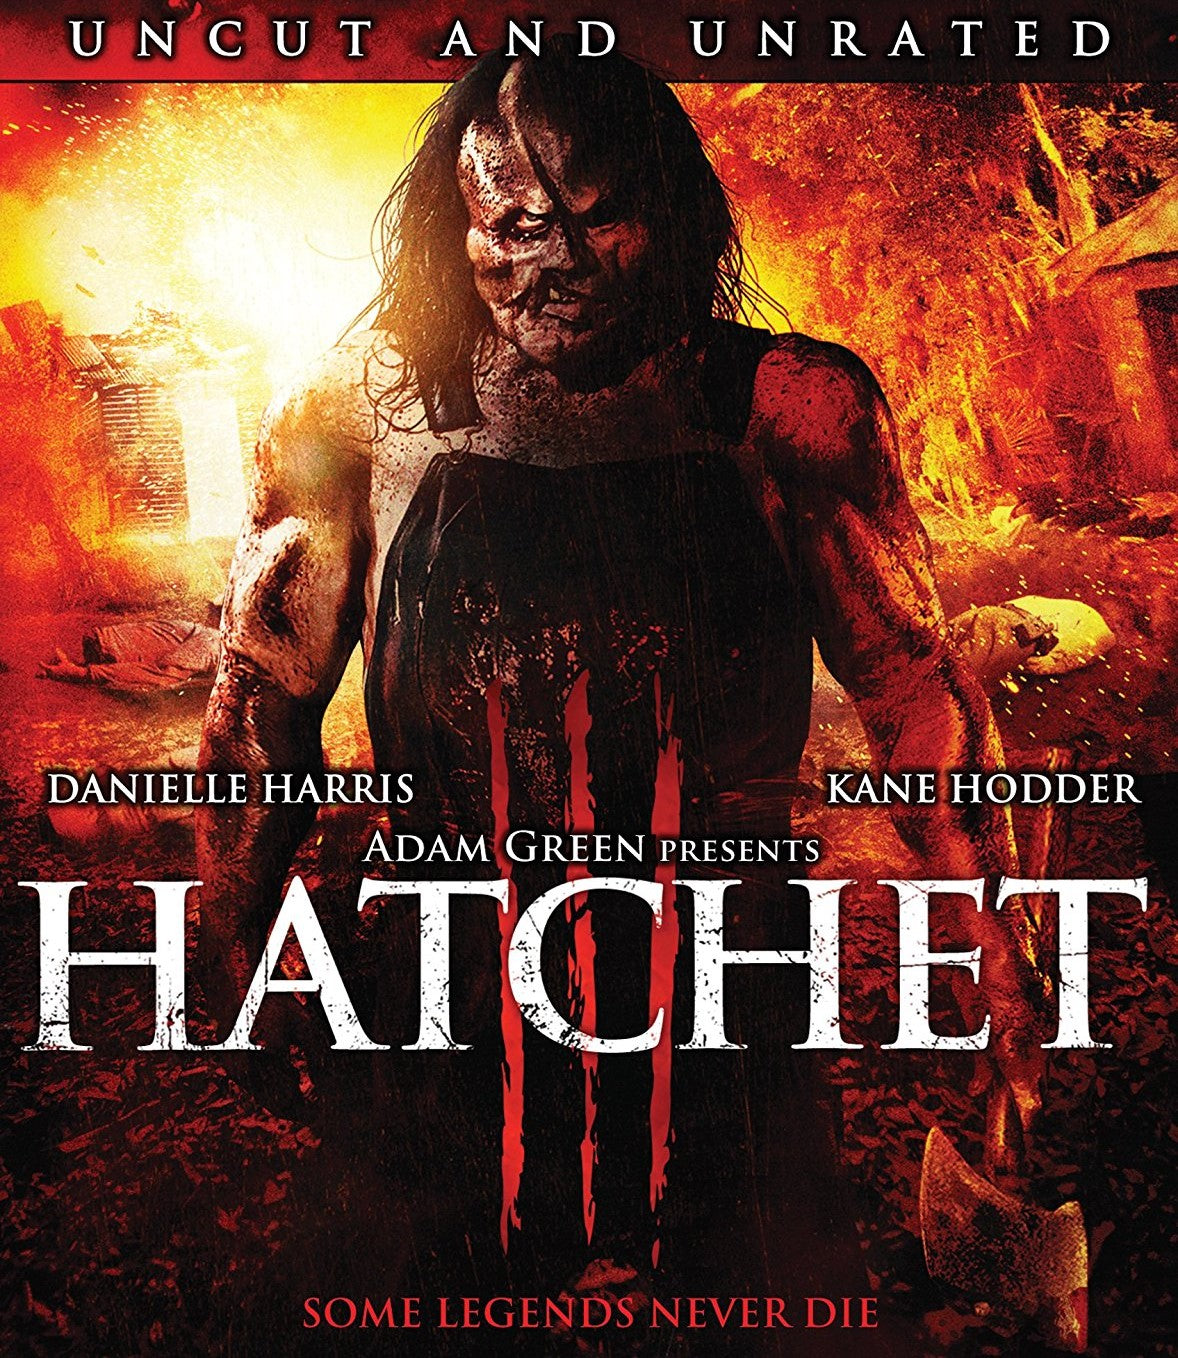 Hatchet Iii Blu-Ray Blu-Ray